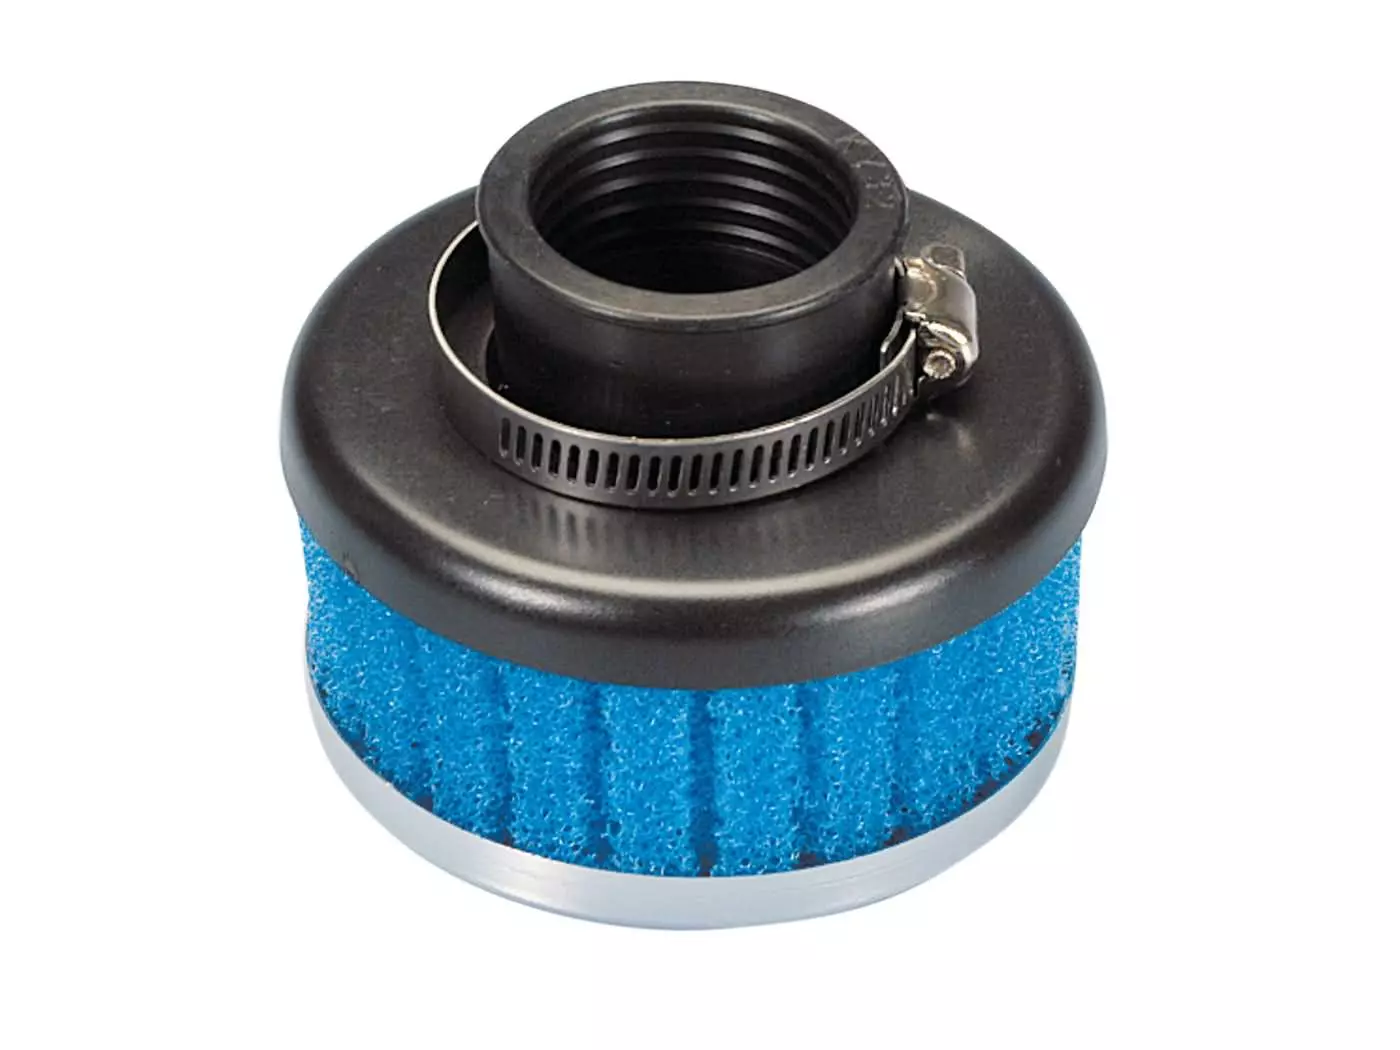 Luchtfilter Polini Special Air Box Filter kort 32mm recht blauw